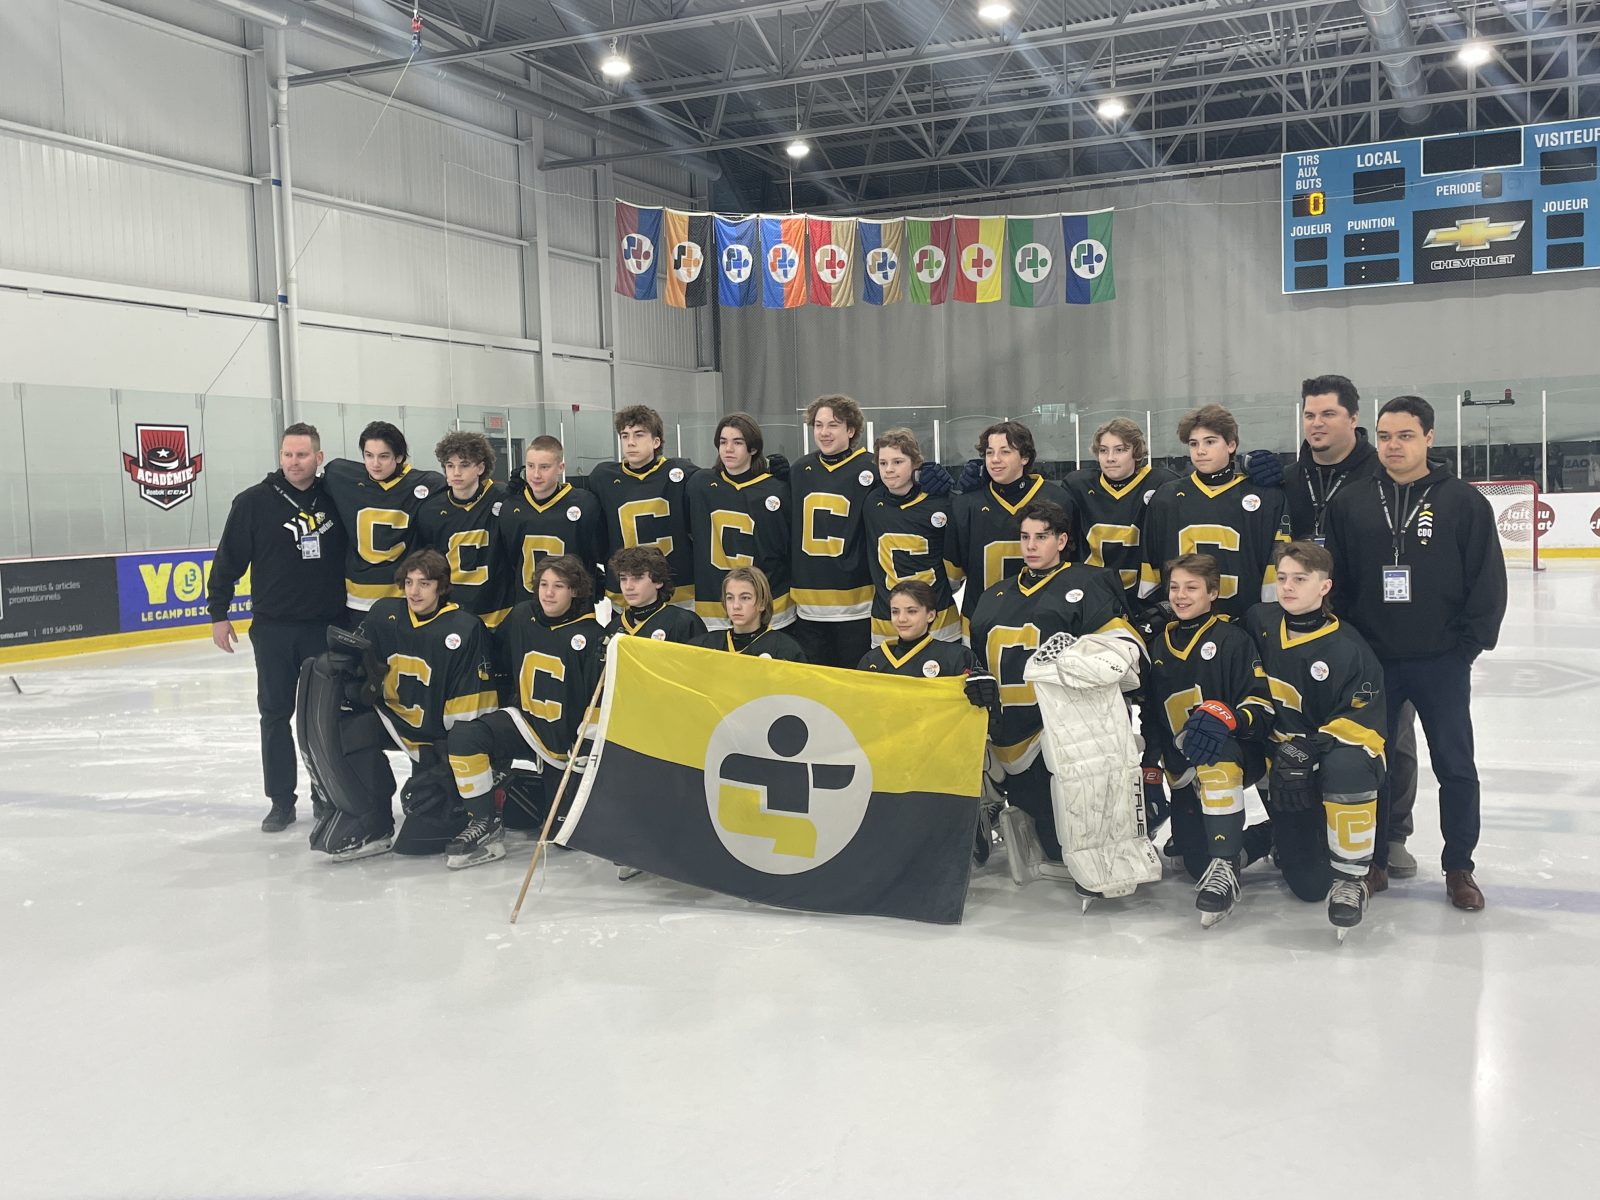 Jeux de Québec : les hockeyeurs retiennent l’attention